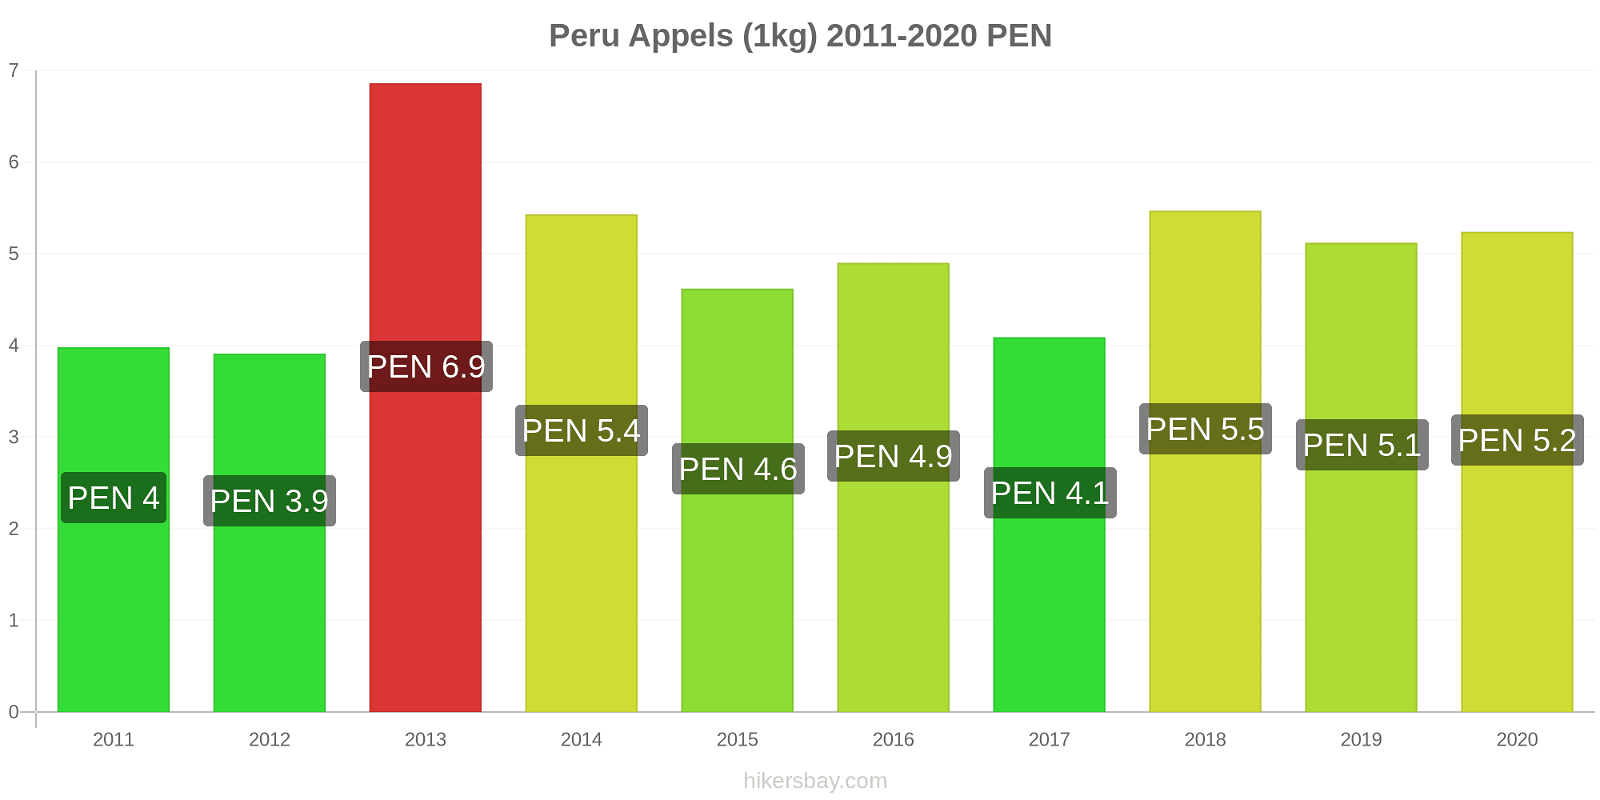 Peru prijswijzigingen Appels (1kg) hikersbay.com